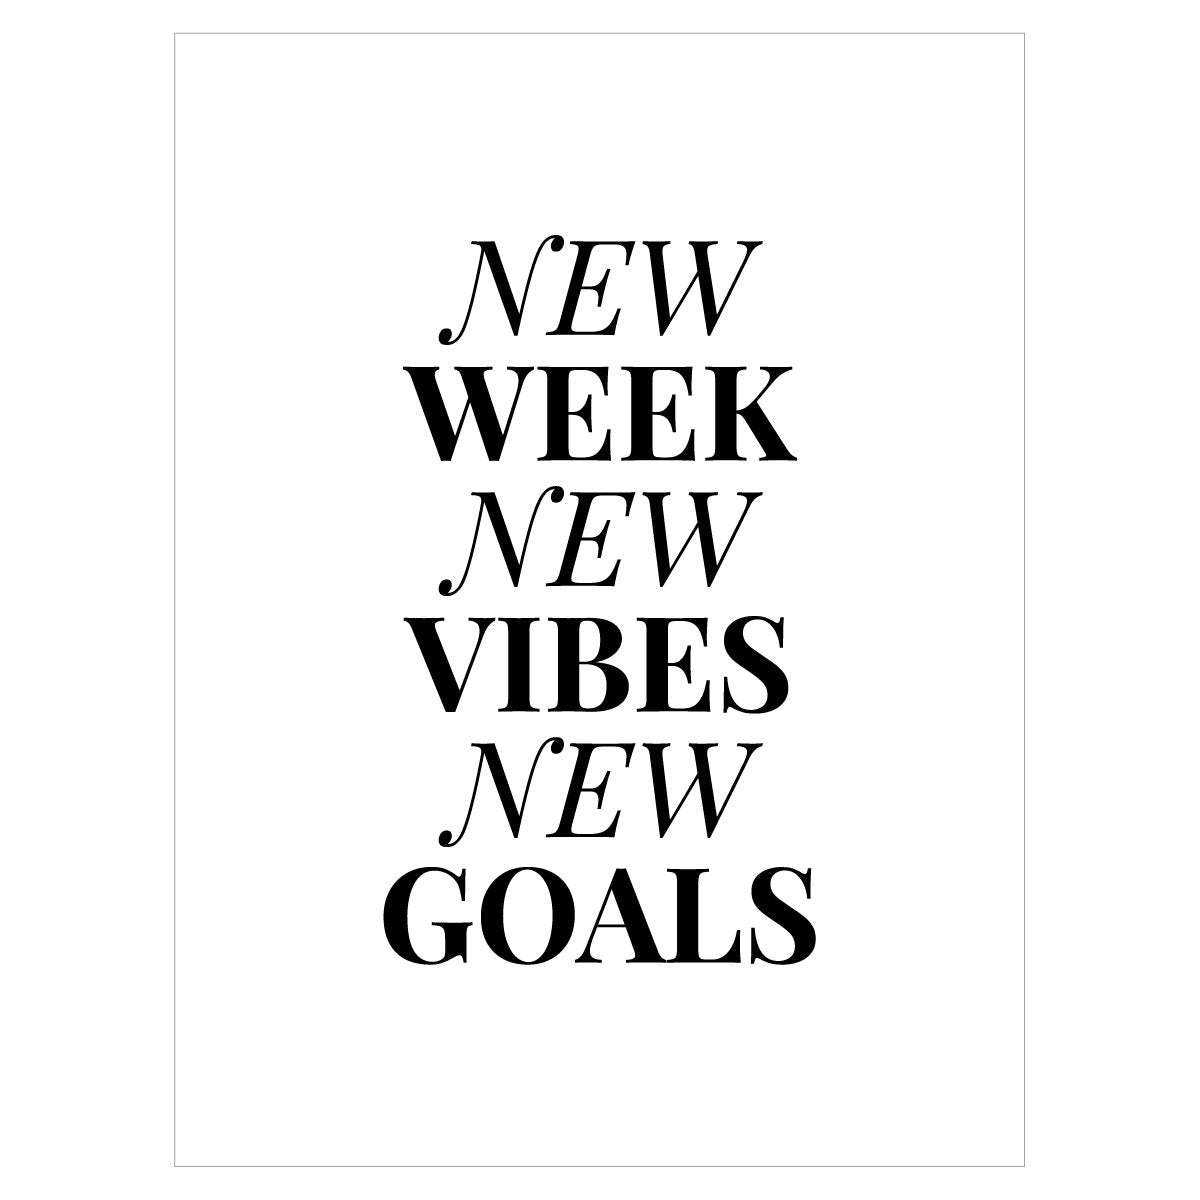 Plakat - New Week New Vibes